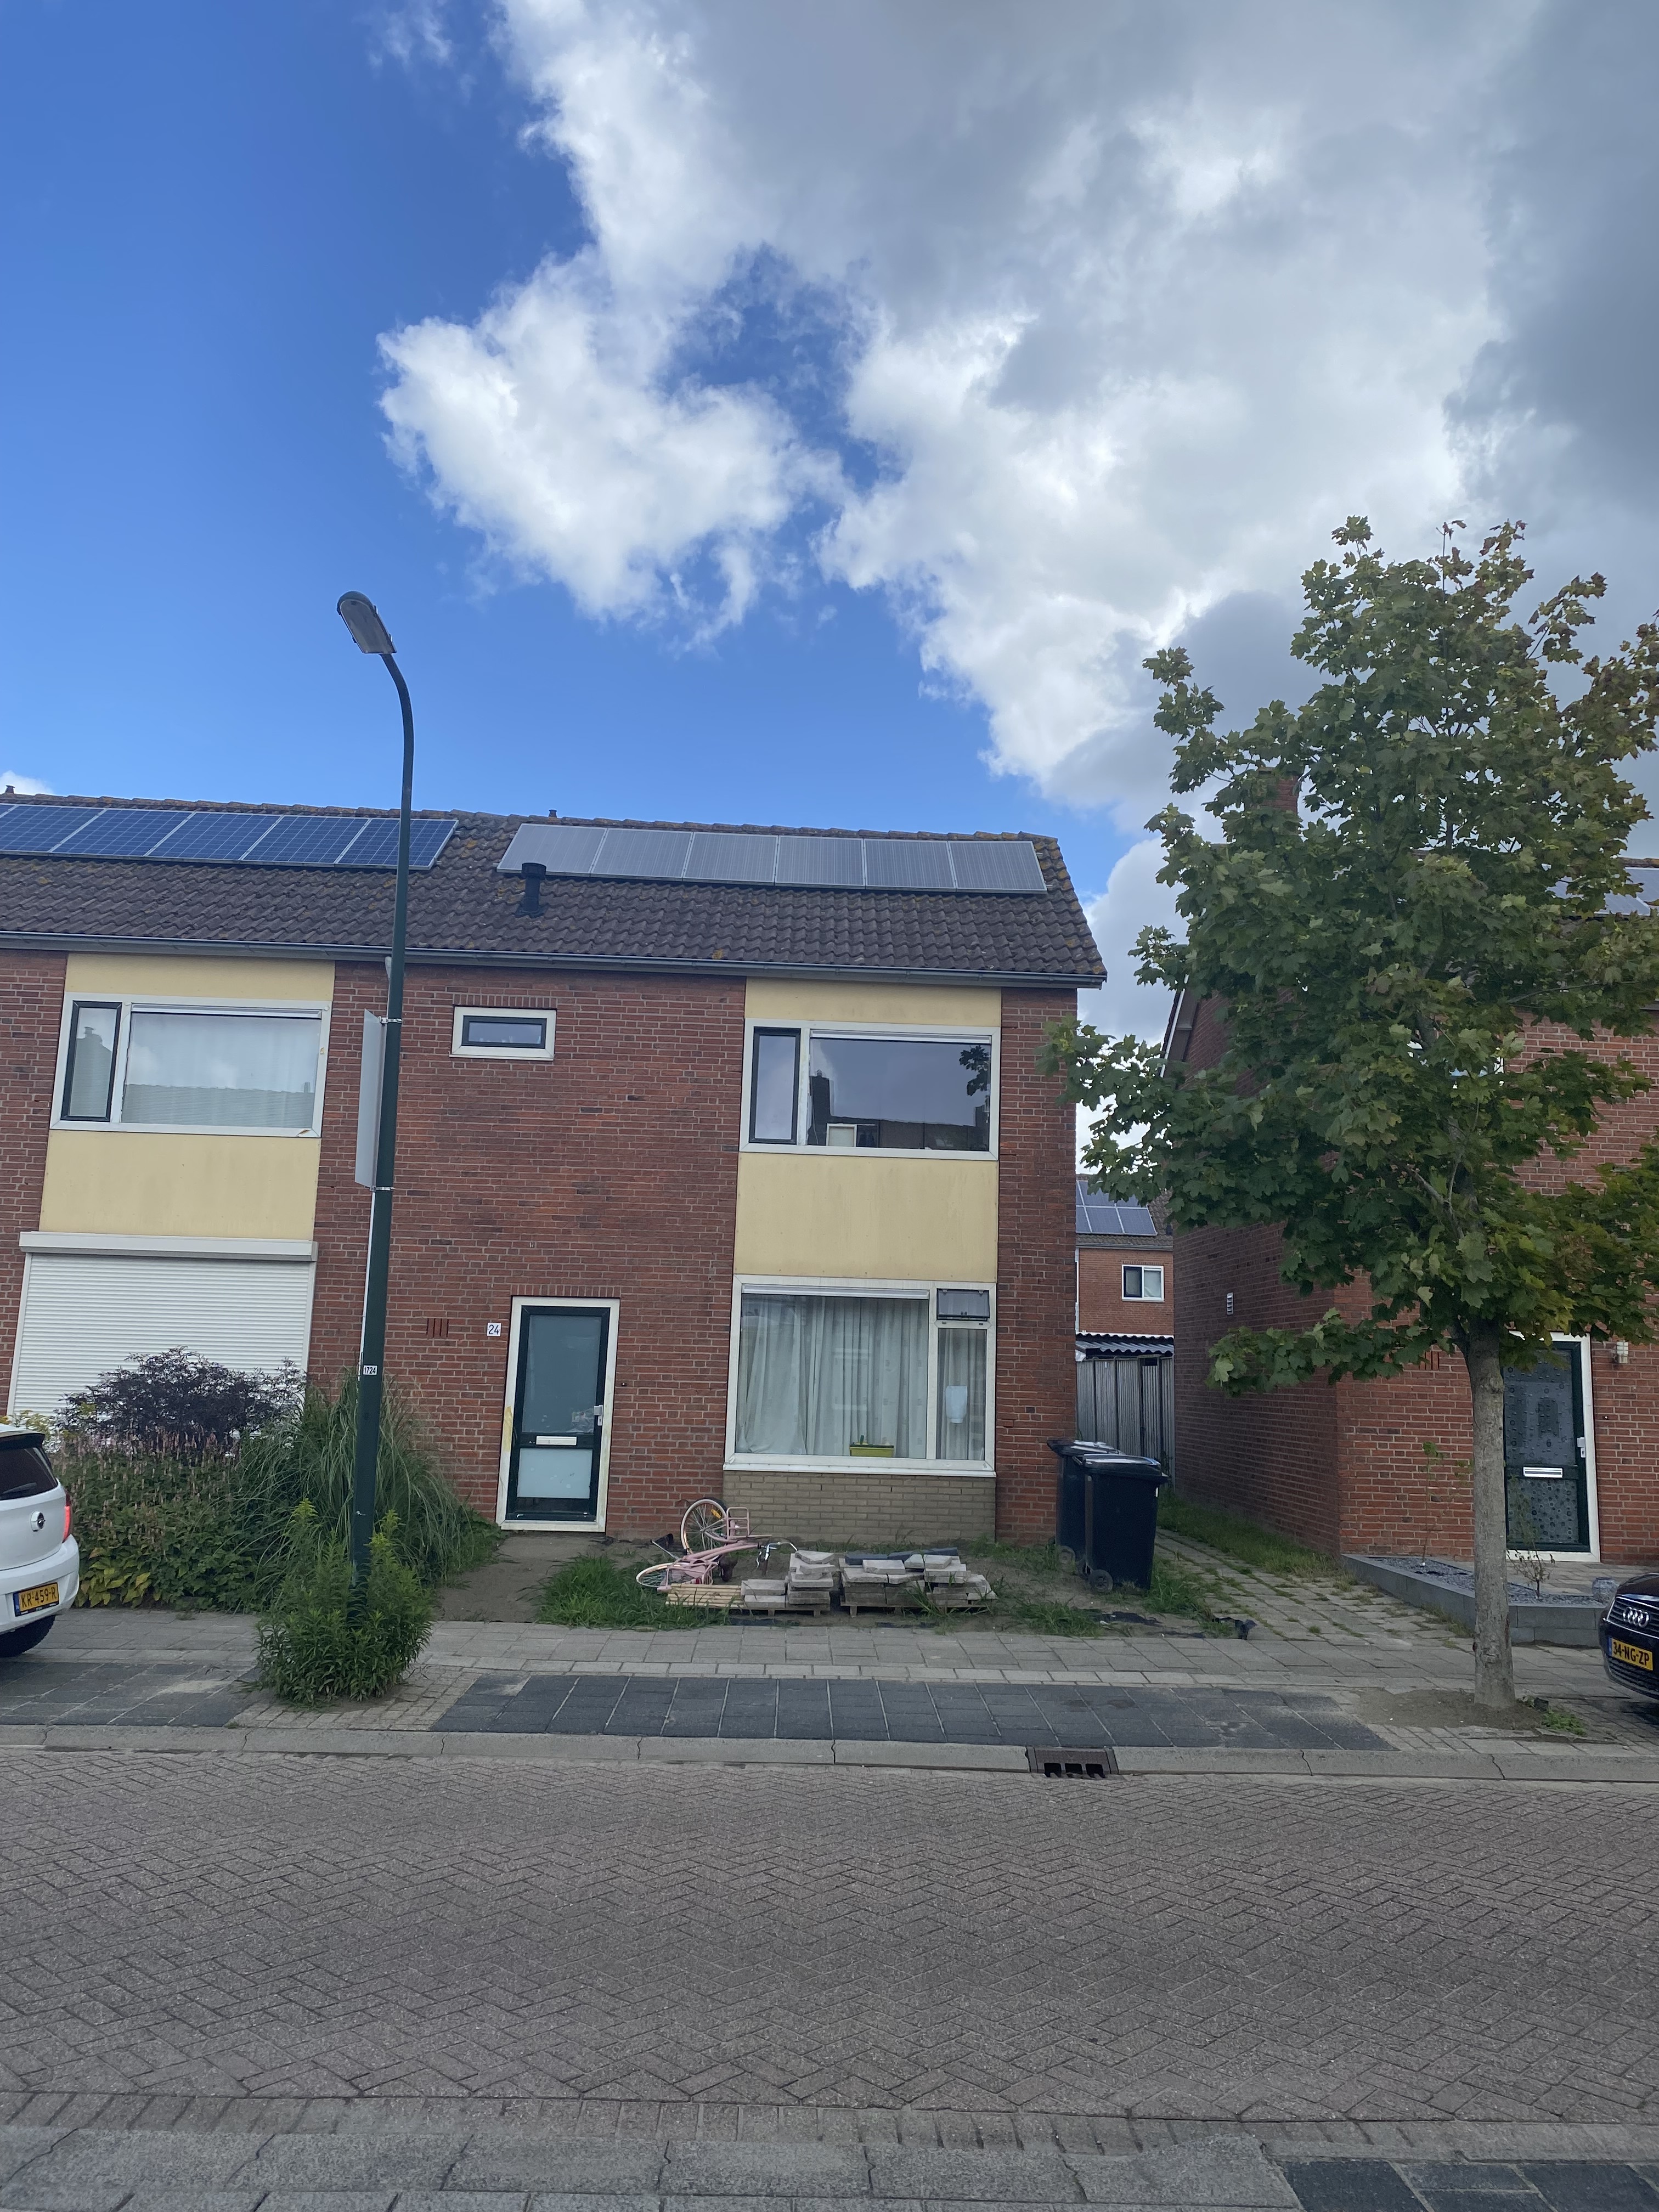 Koningin Julianastraat 24, 4691 GR Tholen, Nederland